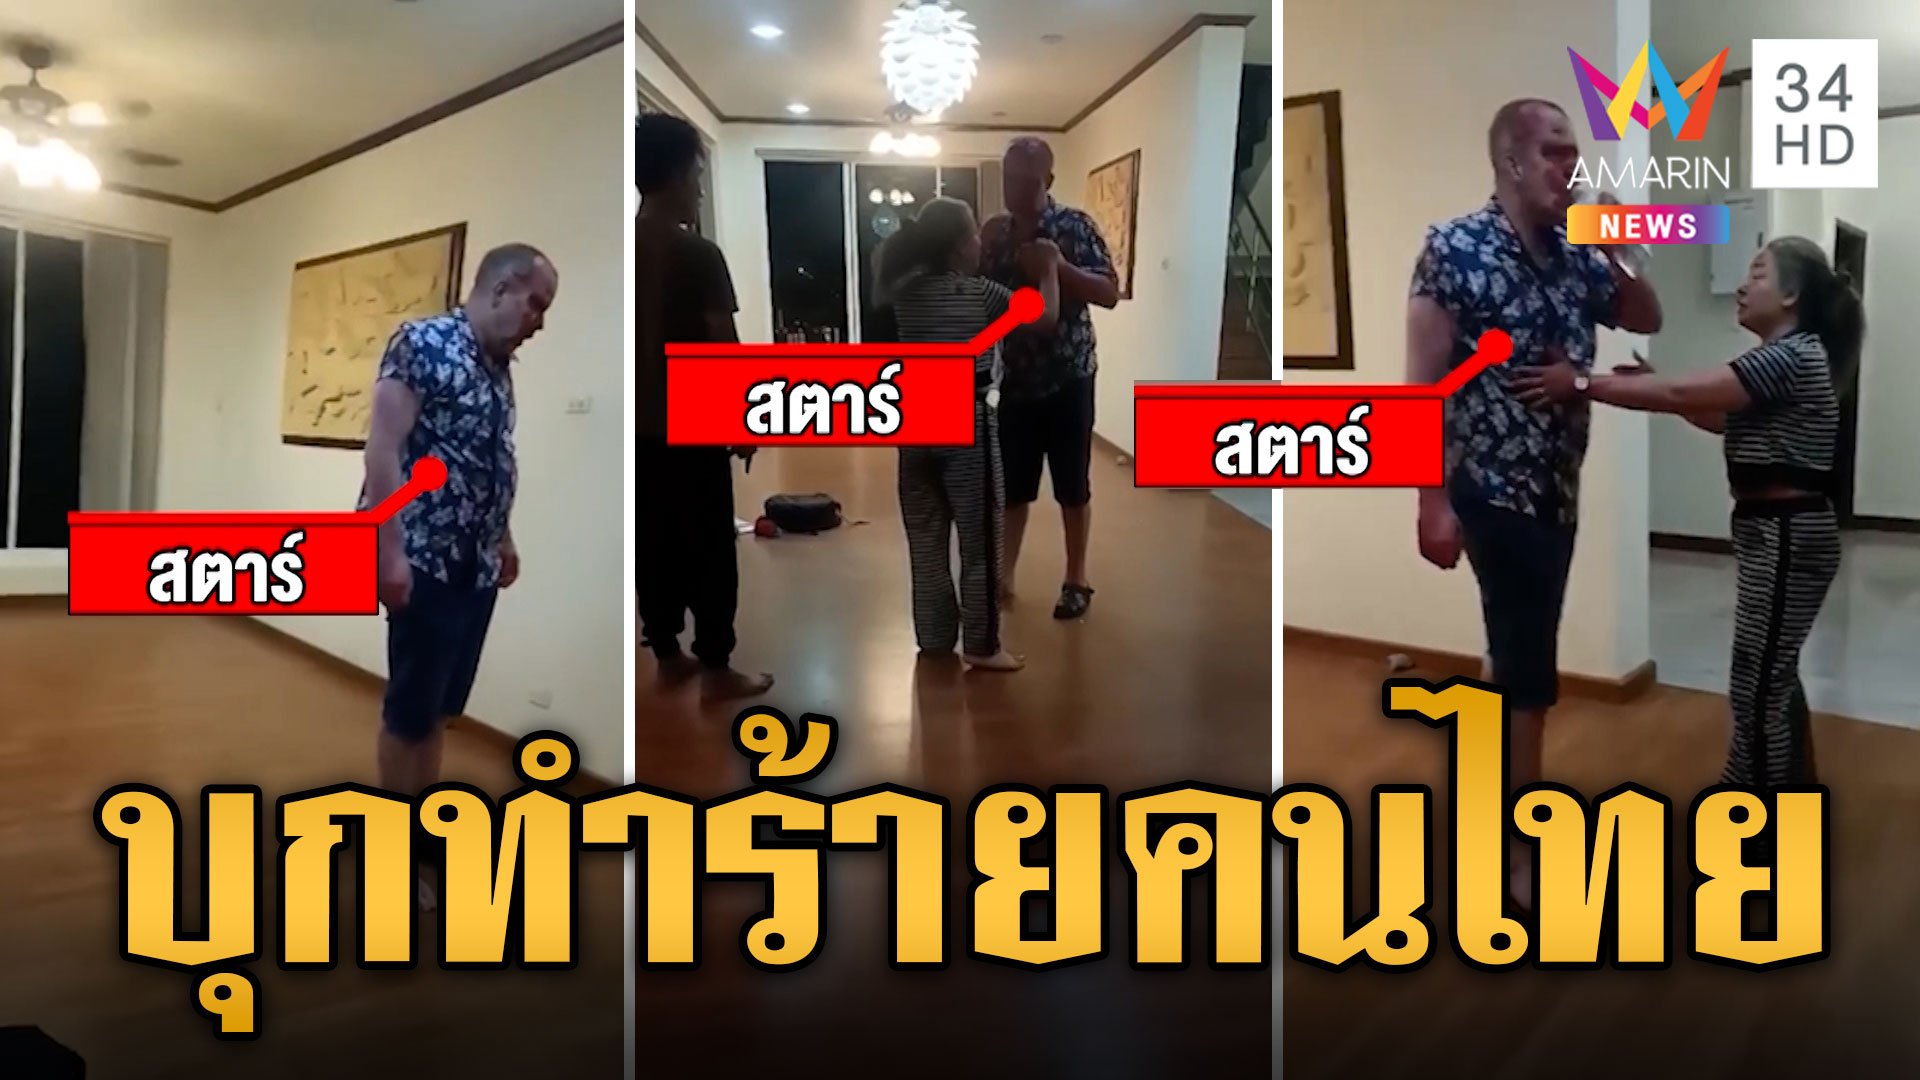 ต่างชาติหัวร้อน! บุกทำร้ายคนไทยถึงบ้าน แถมเรียกเงินแสน | ข่าวเที่ยงอมรินทร์ | 18 มี.ค. 67 | AMARIN TVHD34